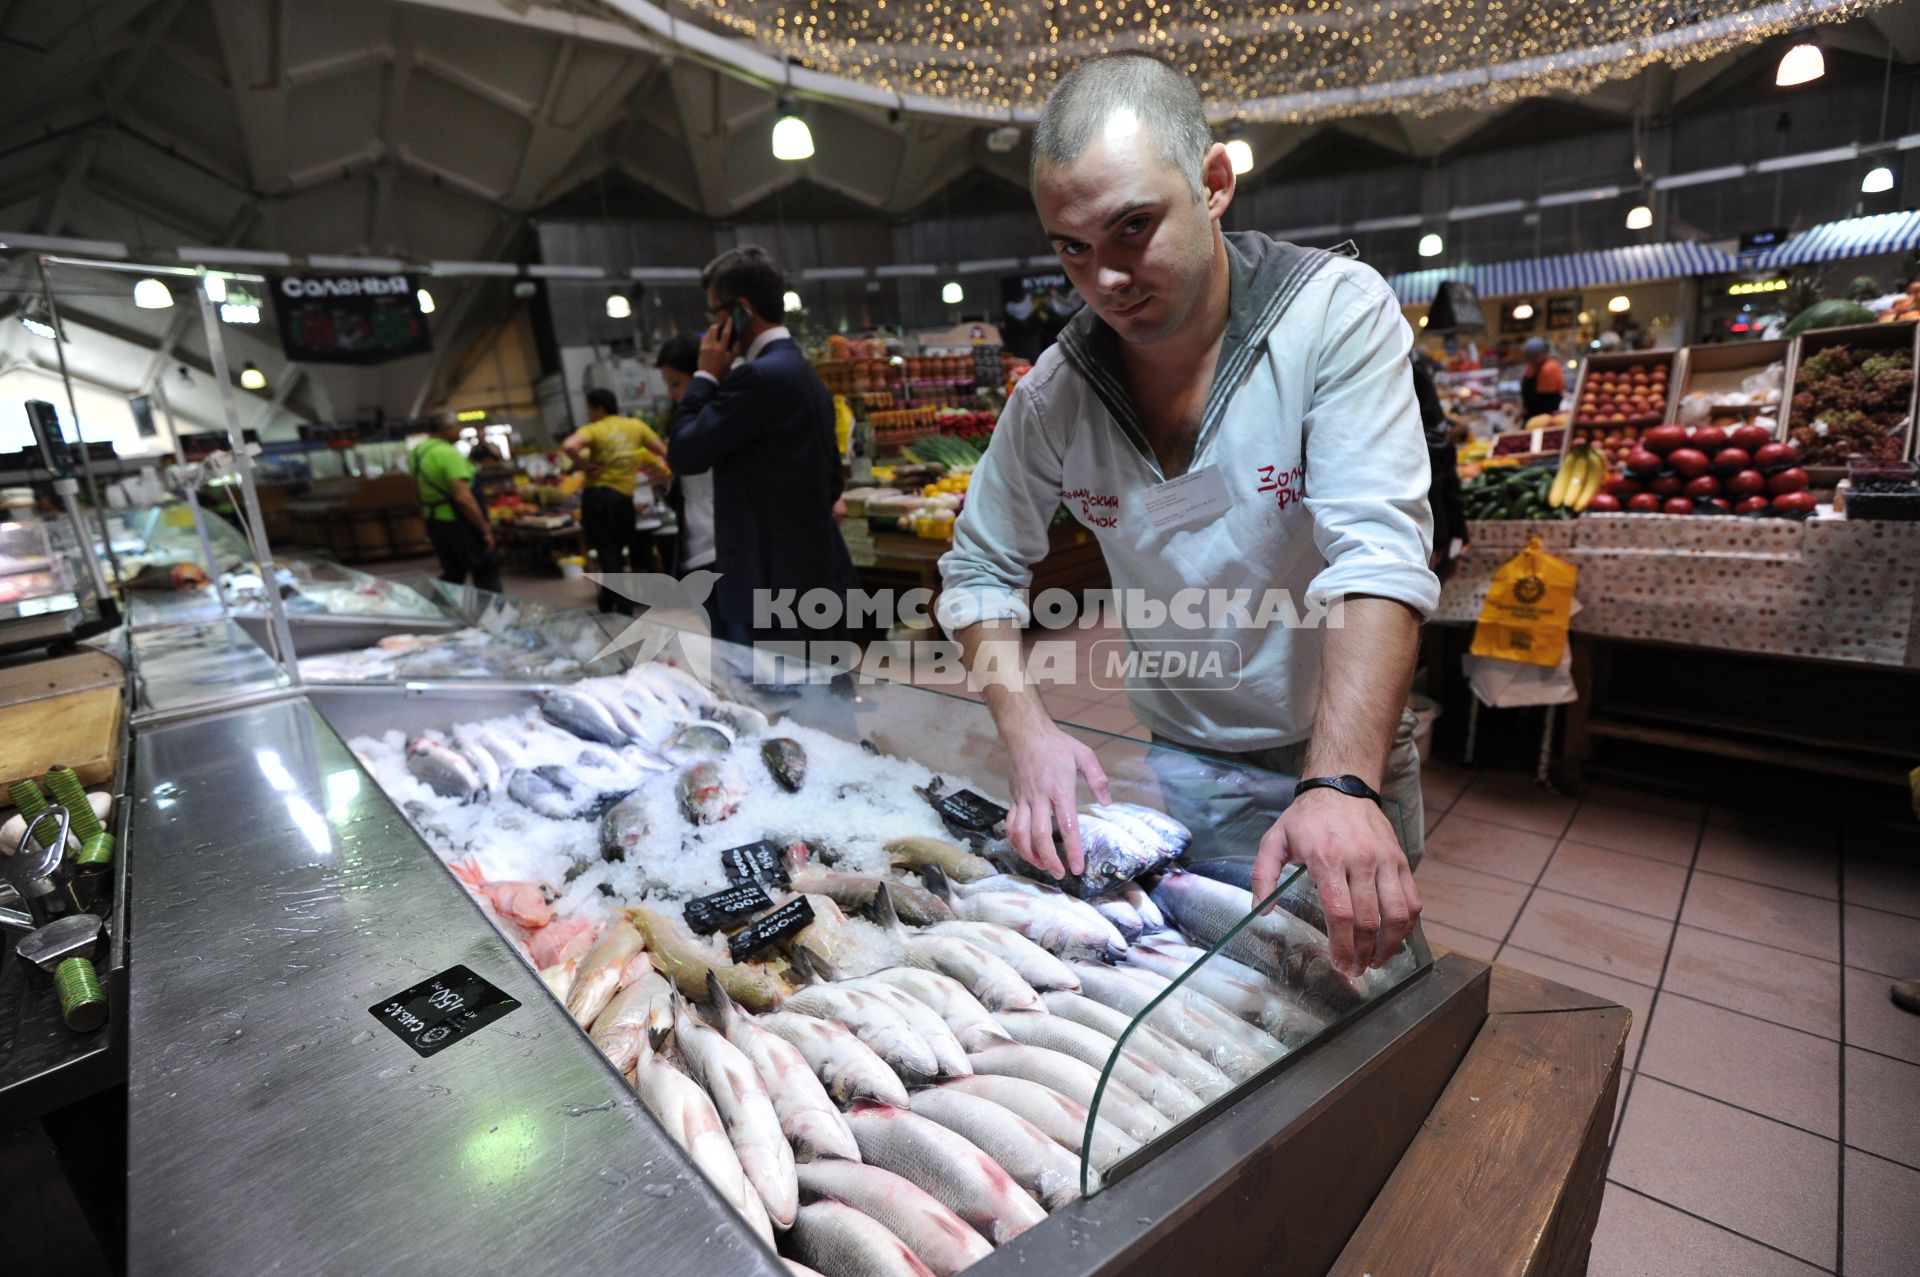 Даниловский рынок. Рыбные ряды. На снимке: продавец рыбного отдела у витрины.